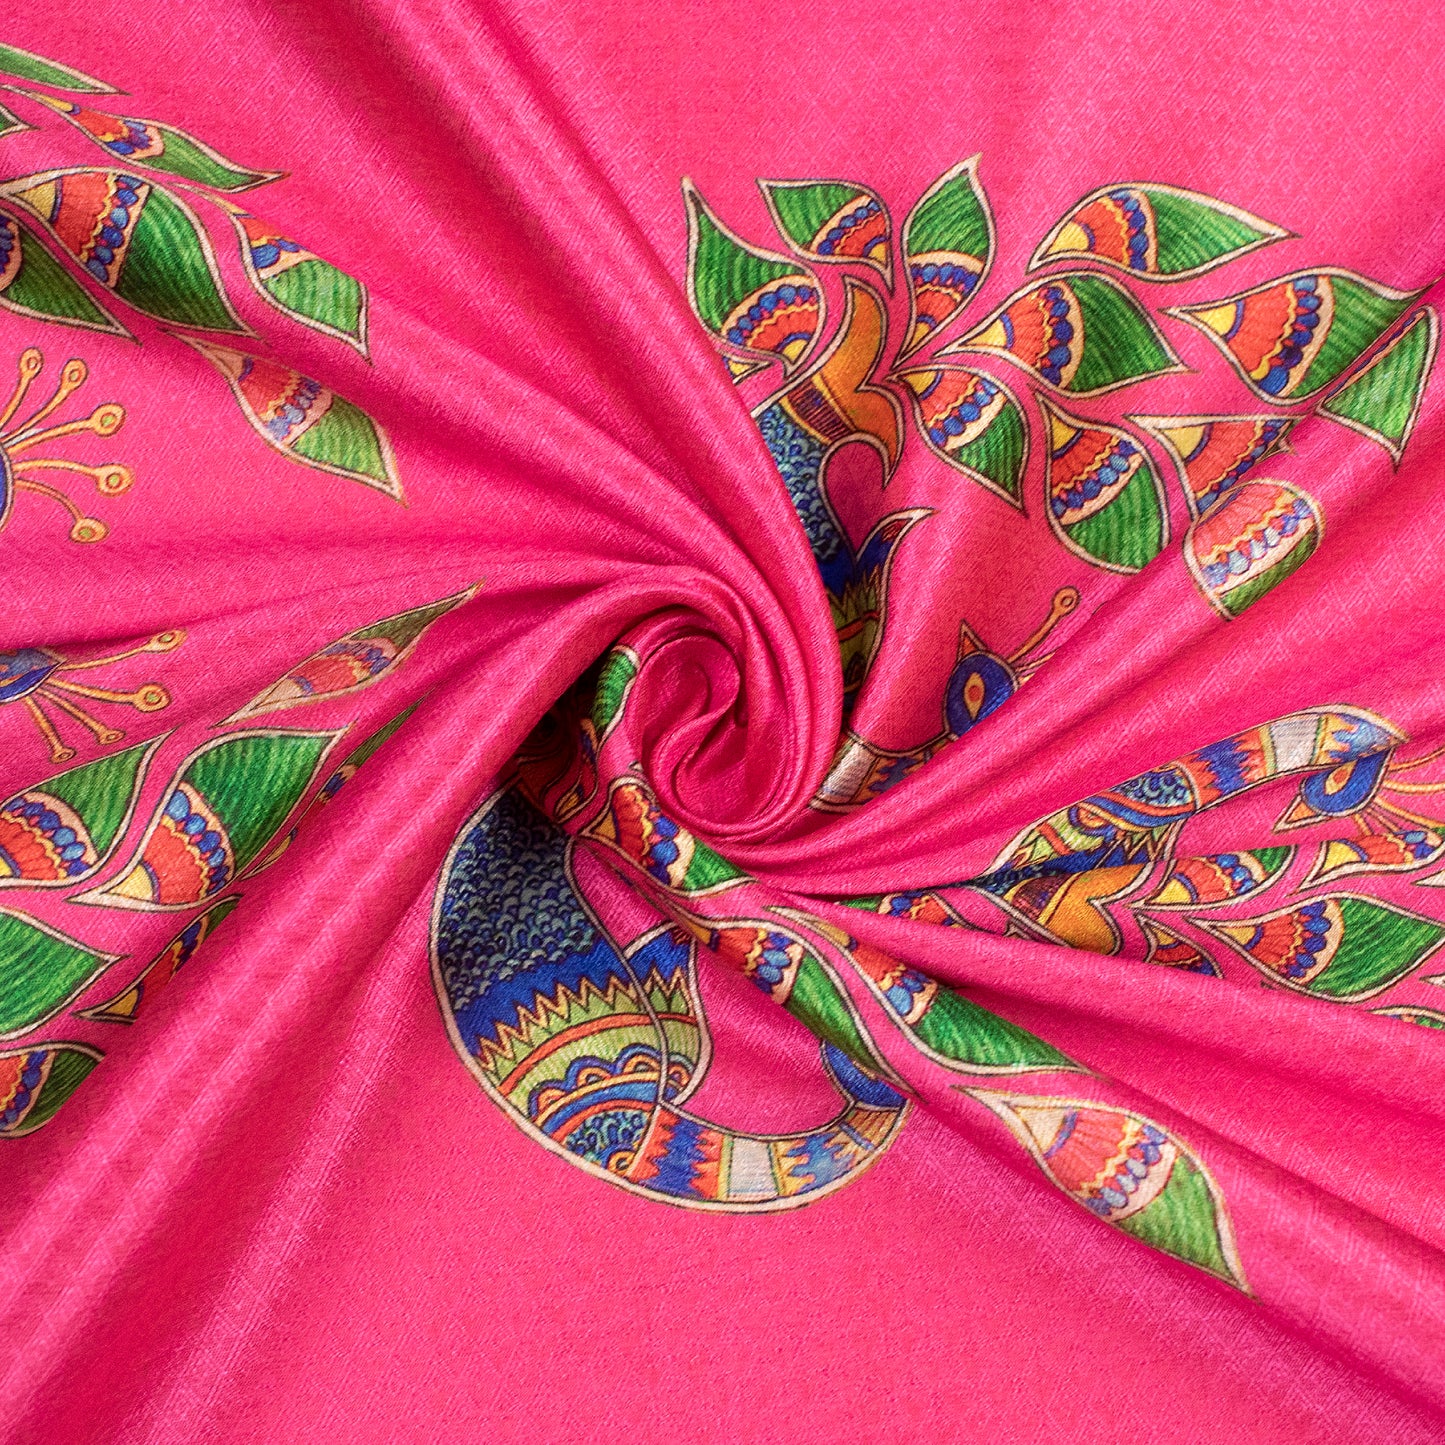 Fuscia Pink Madhubani Jacquard Booti Art Silk Fabric (Width 56 Inches)